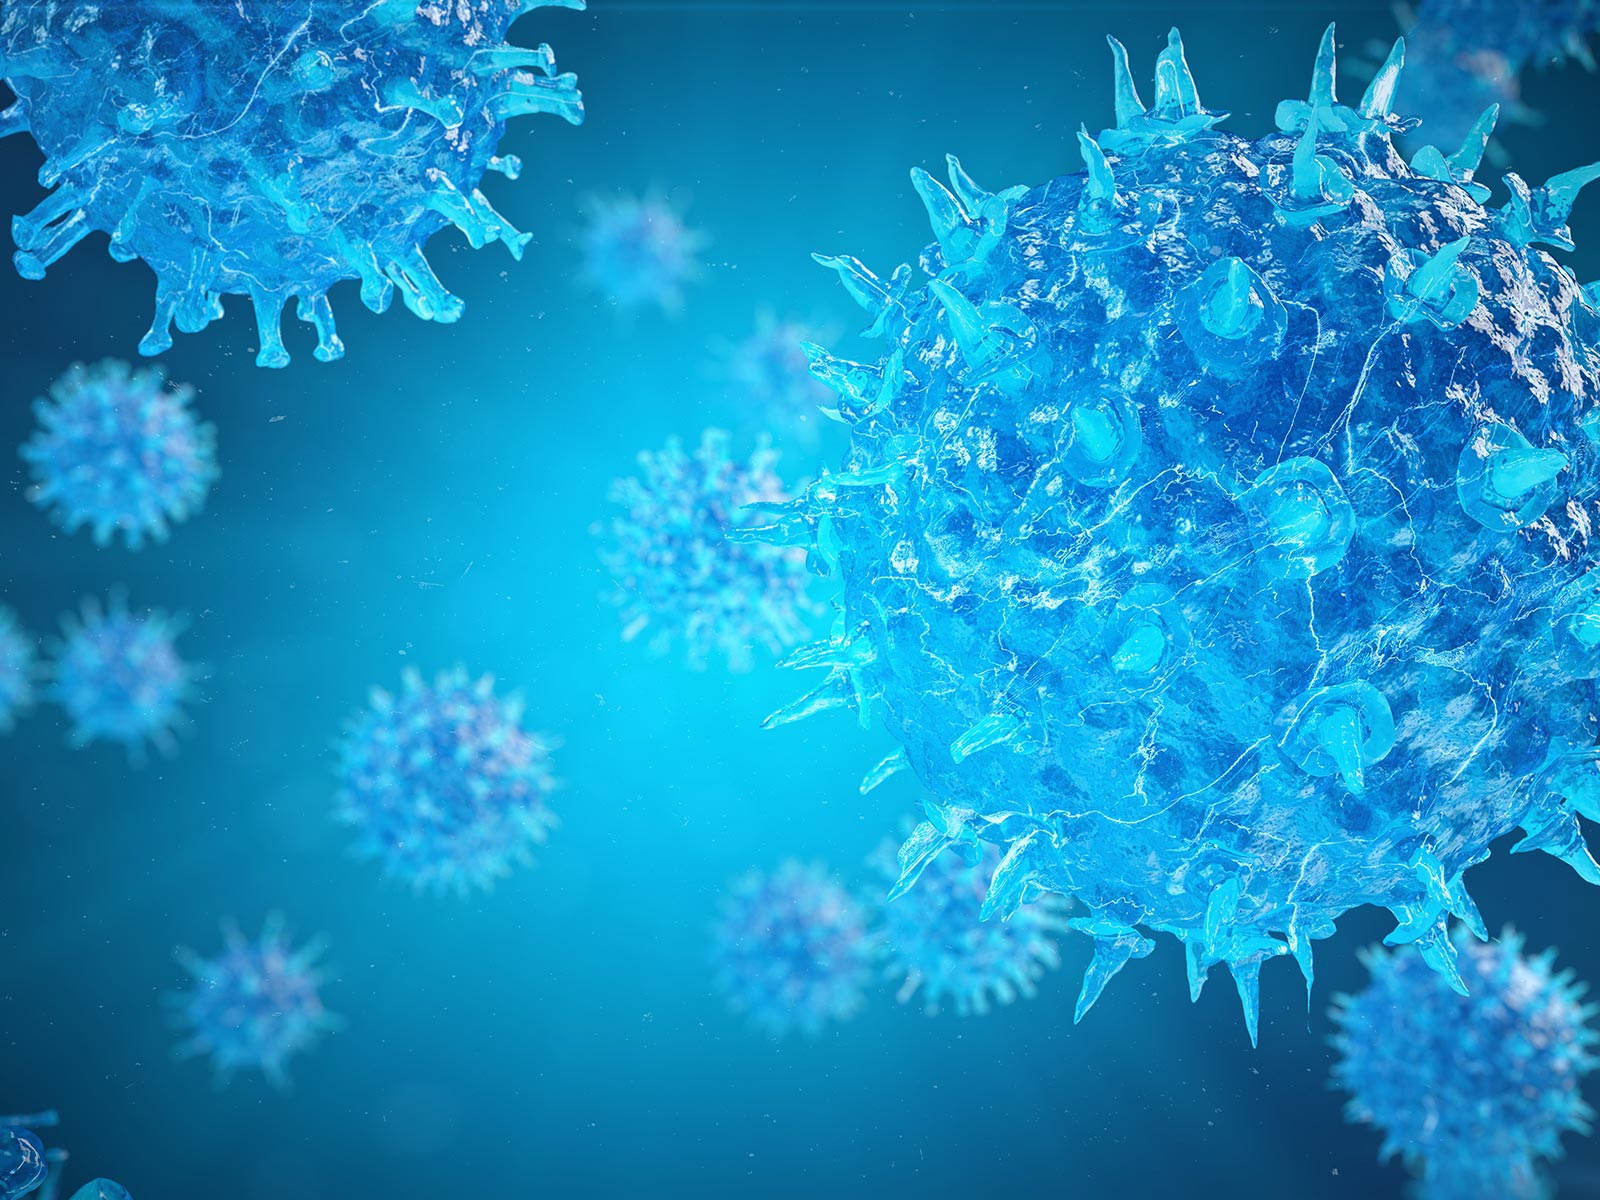 ノロウイルスの特徴と対策